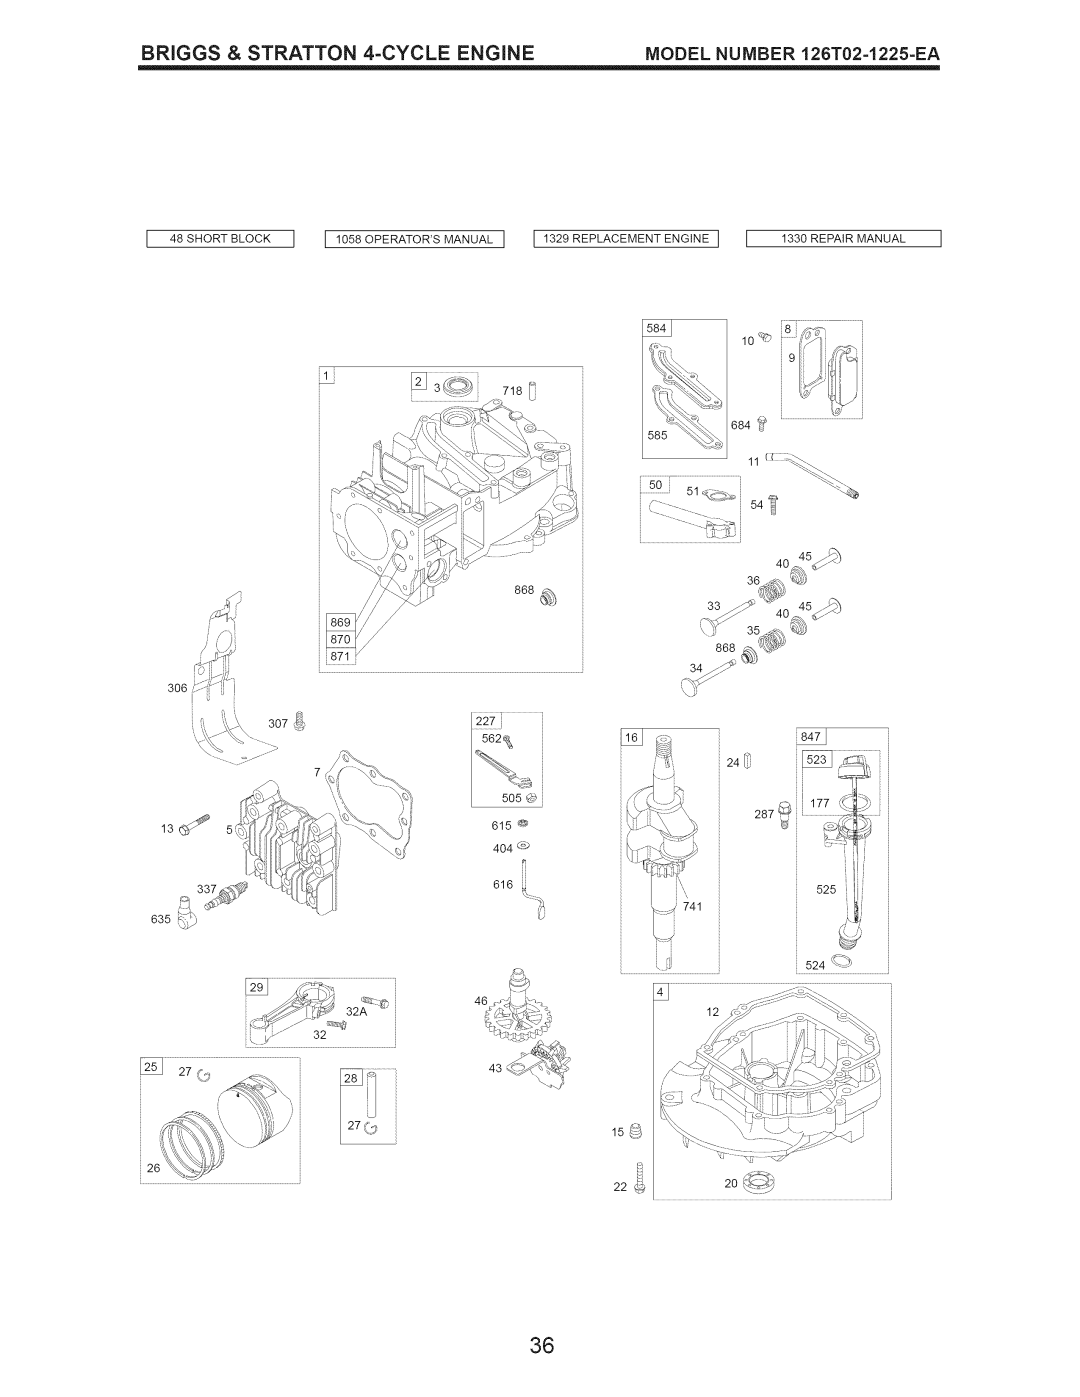 Craftsman 917.389050 _84J, _;qL#, Short Block, II058OPERATORSMANUALI I 1329 REPLACEMENT ENGINE, Repair Manual, 562_ 